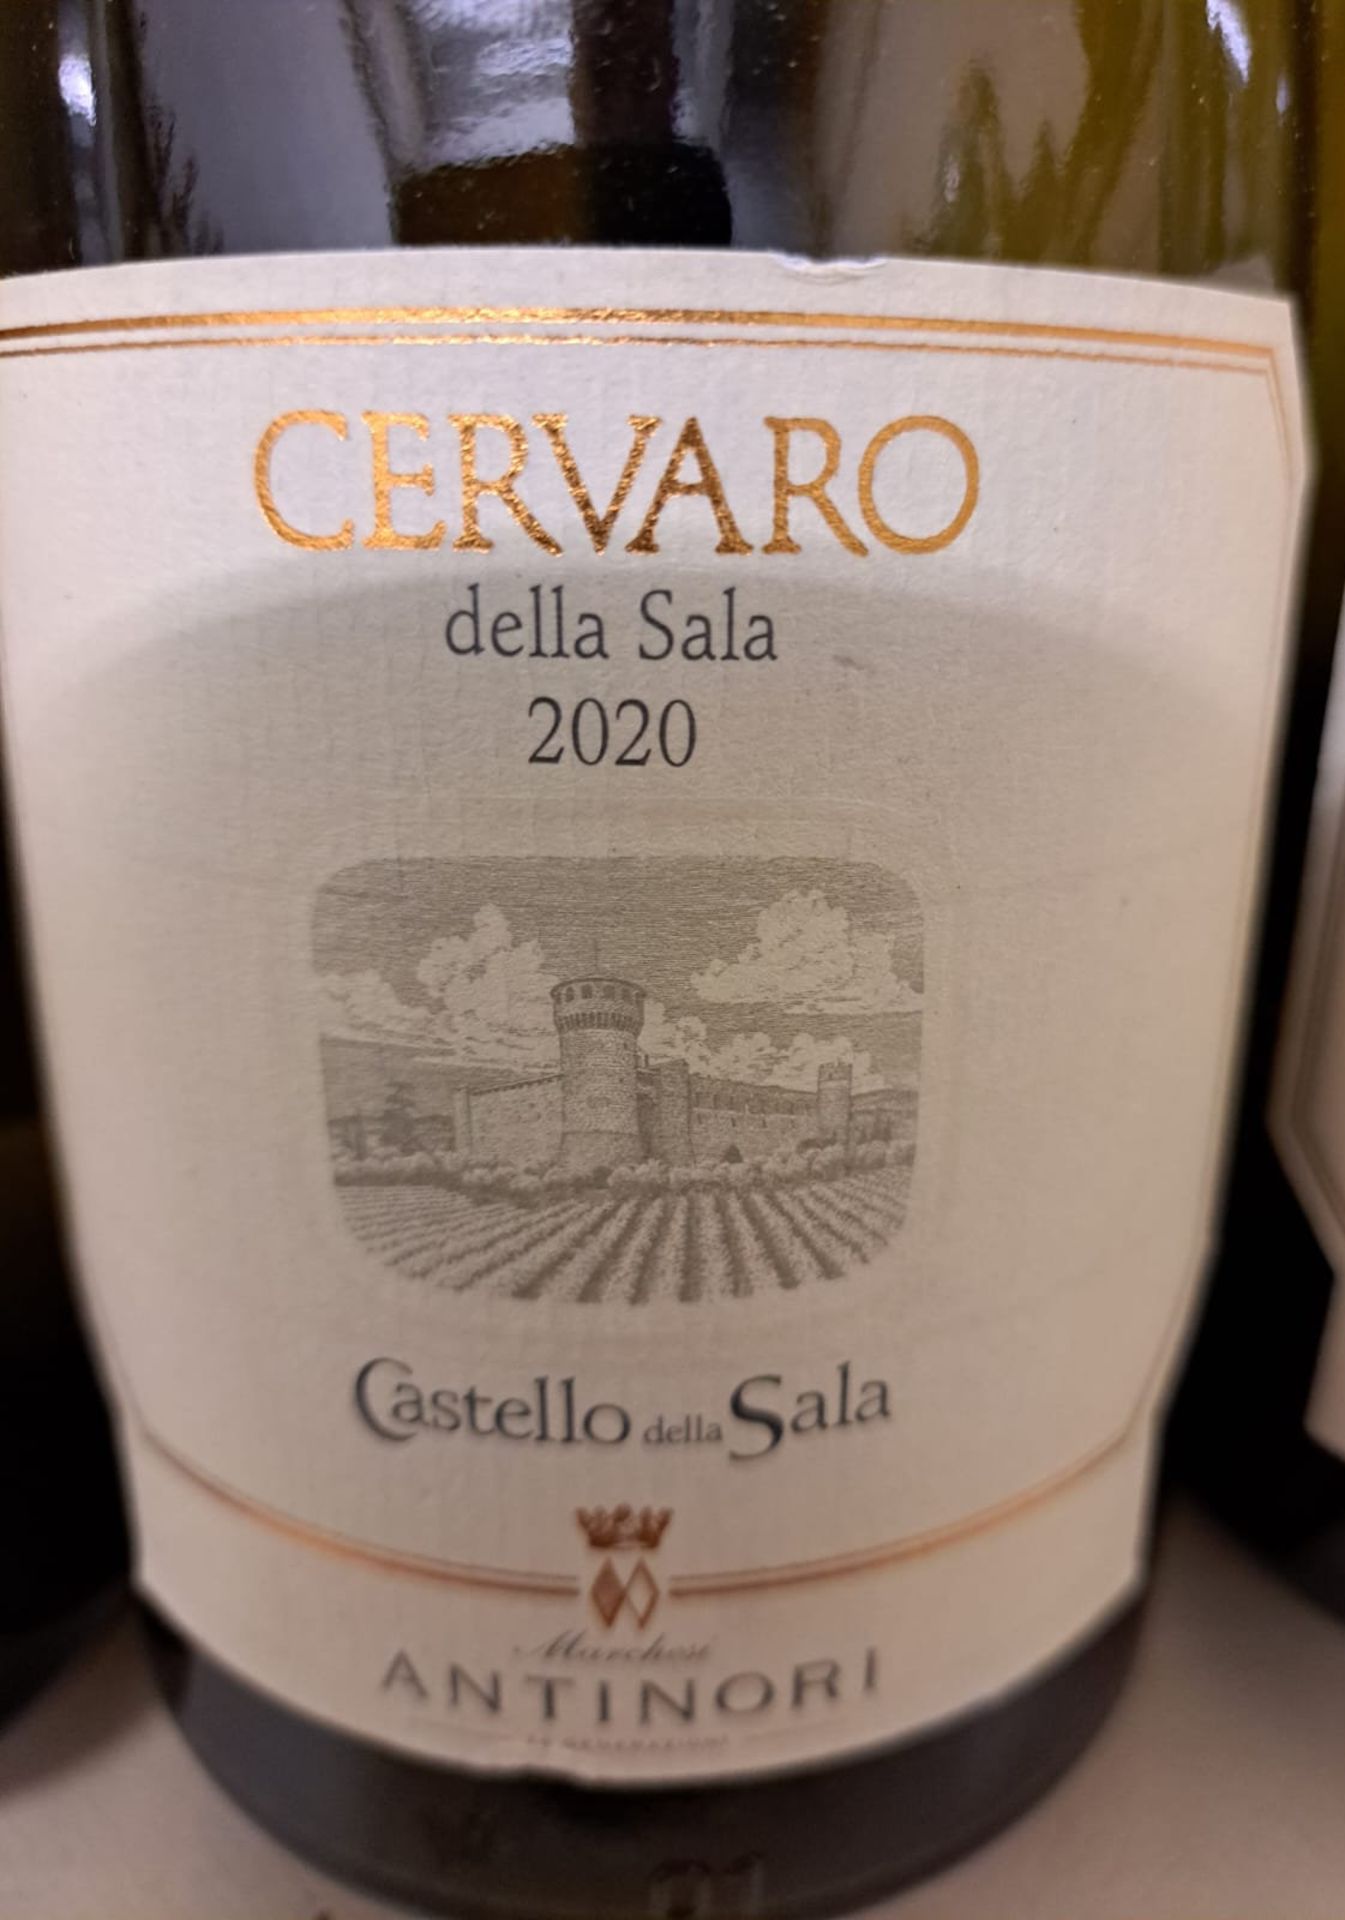 4 x Bottles of 2020 Marchesi Antinori Castello Della Sala 'Cervaro Della Sala' Umbria IGT White Wine - Image 2 of 2